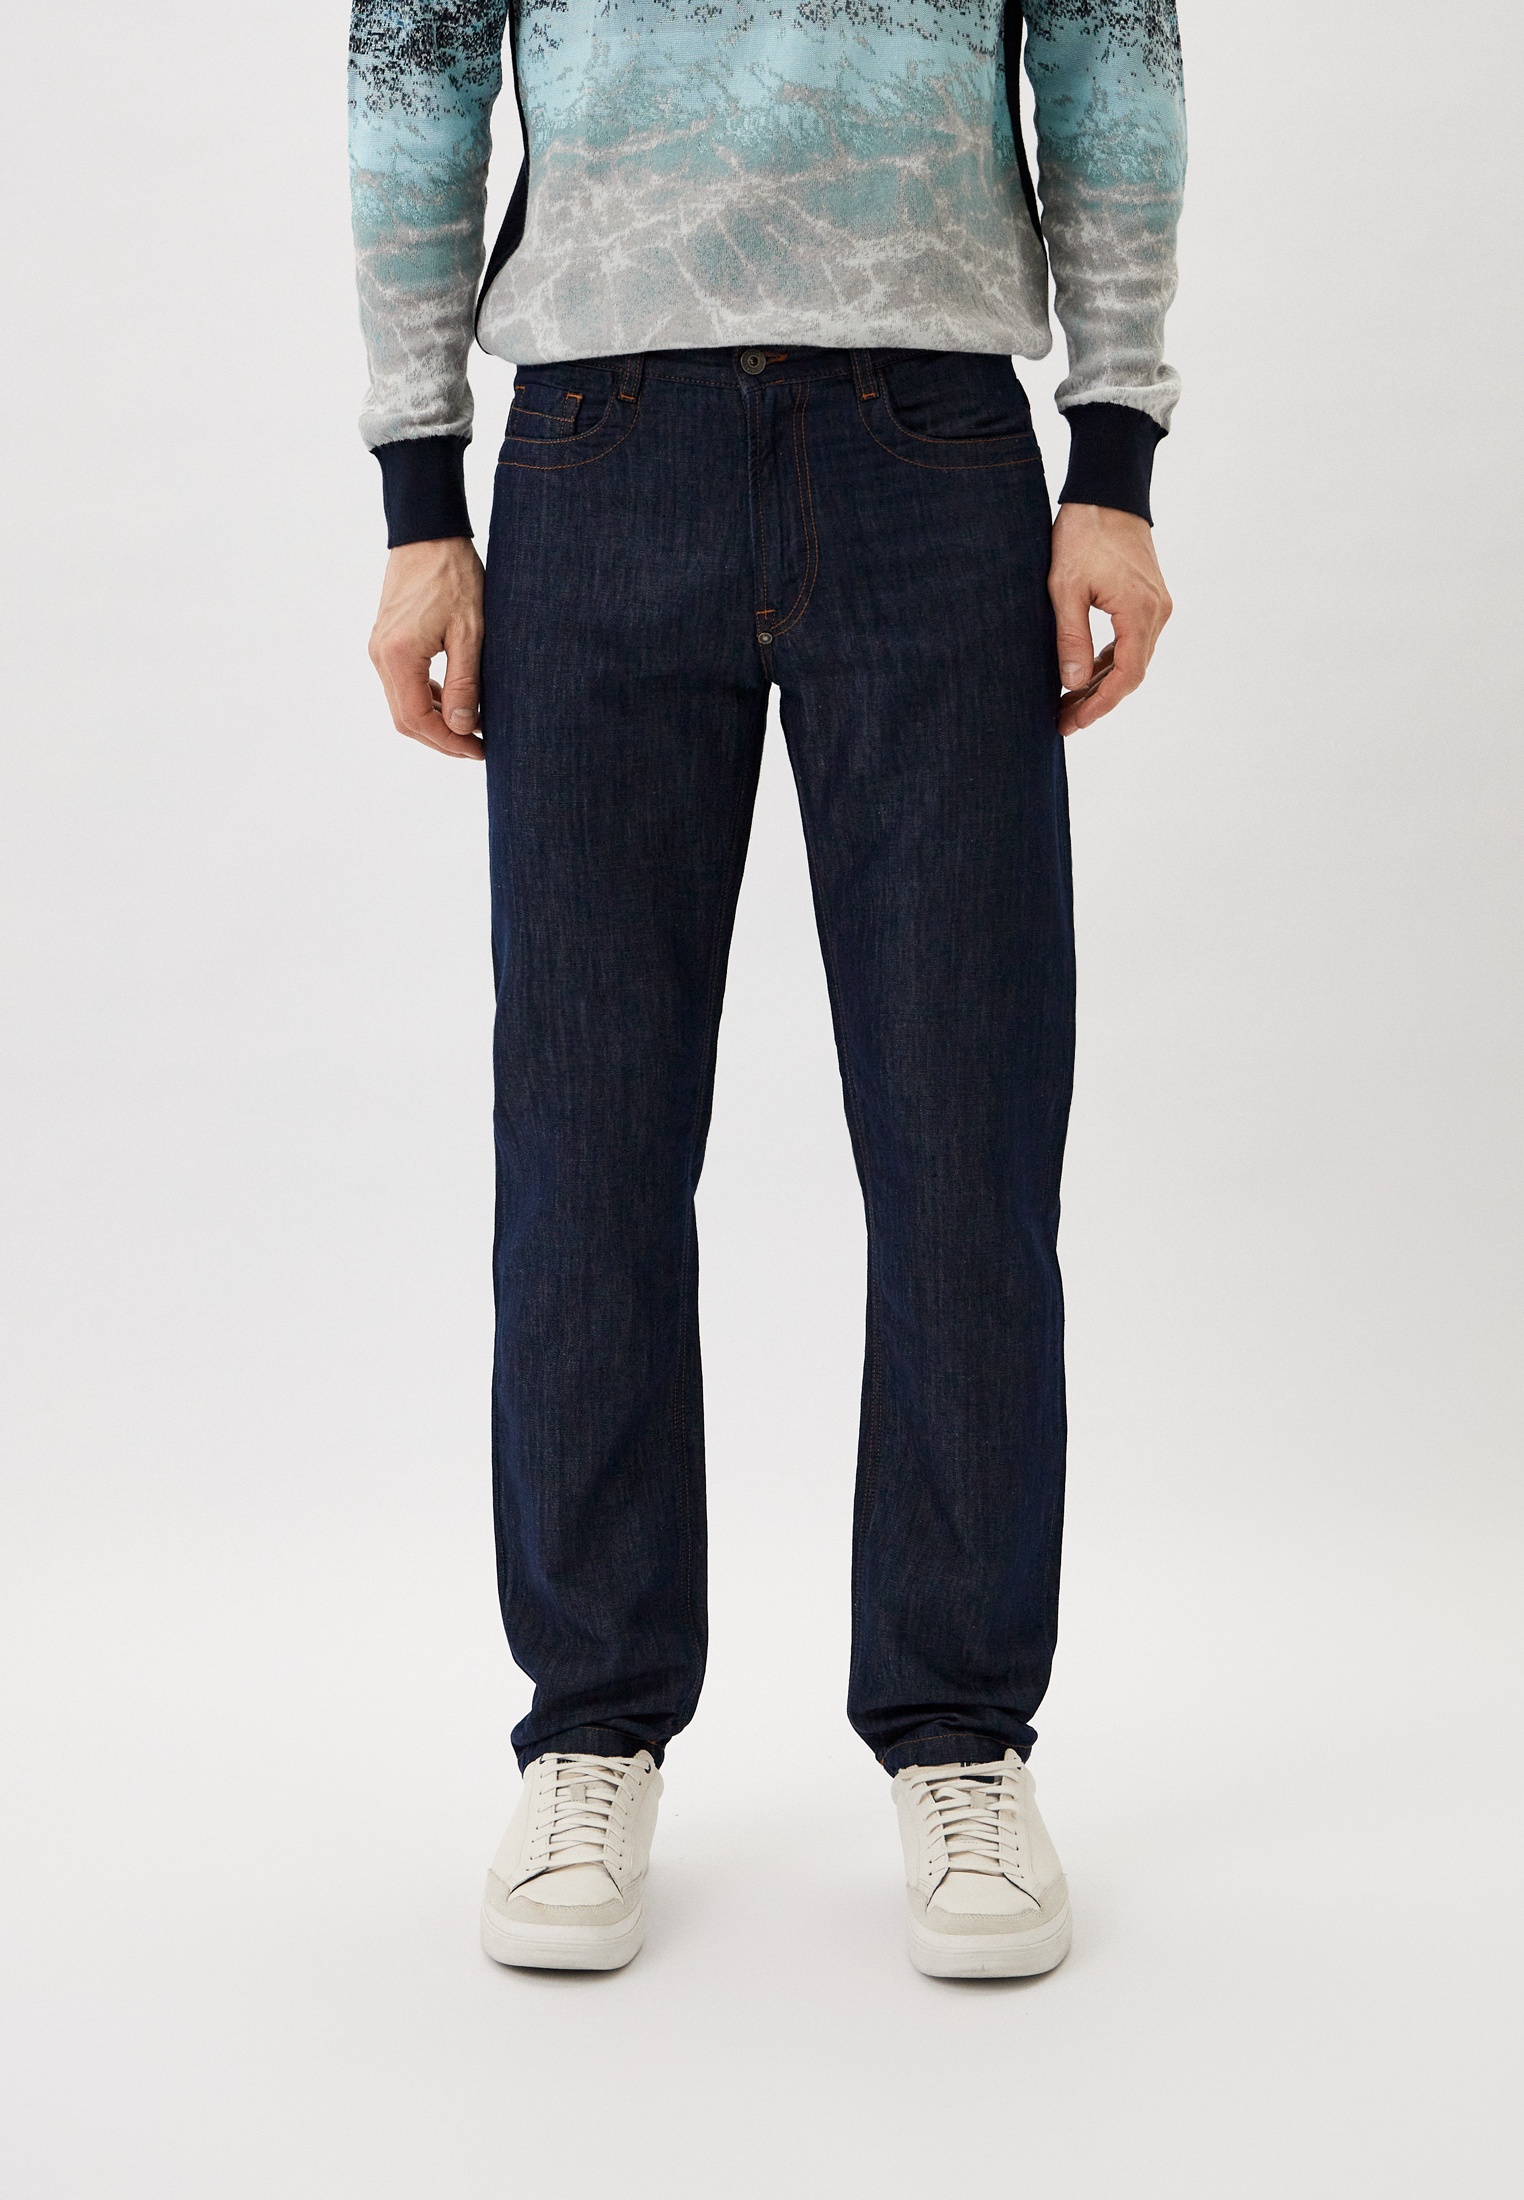 Мужские прямые джинсы Bikkembergs (Биккембергс) CQ10285T259A: изображение 5